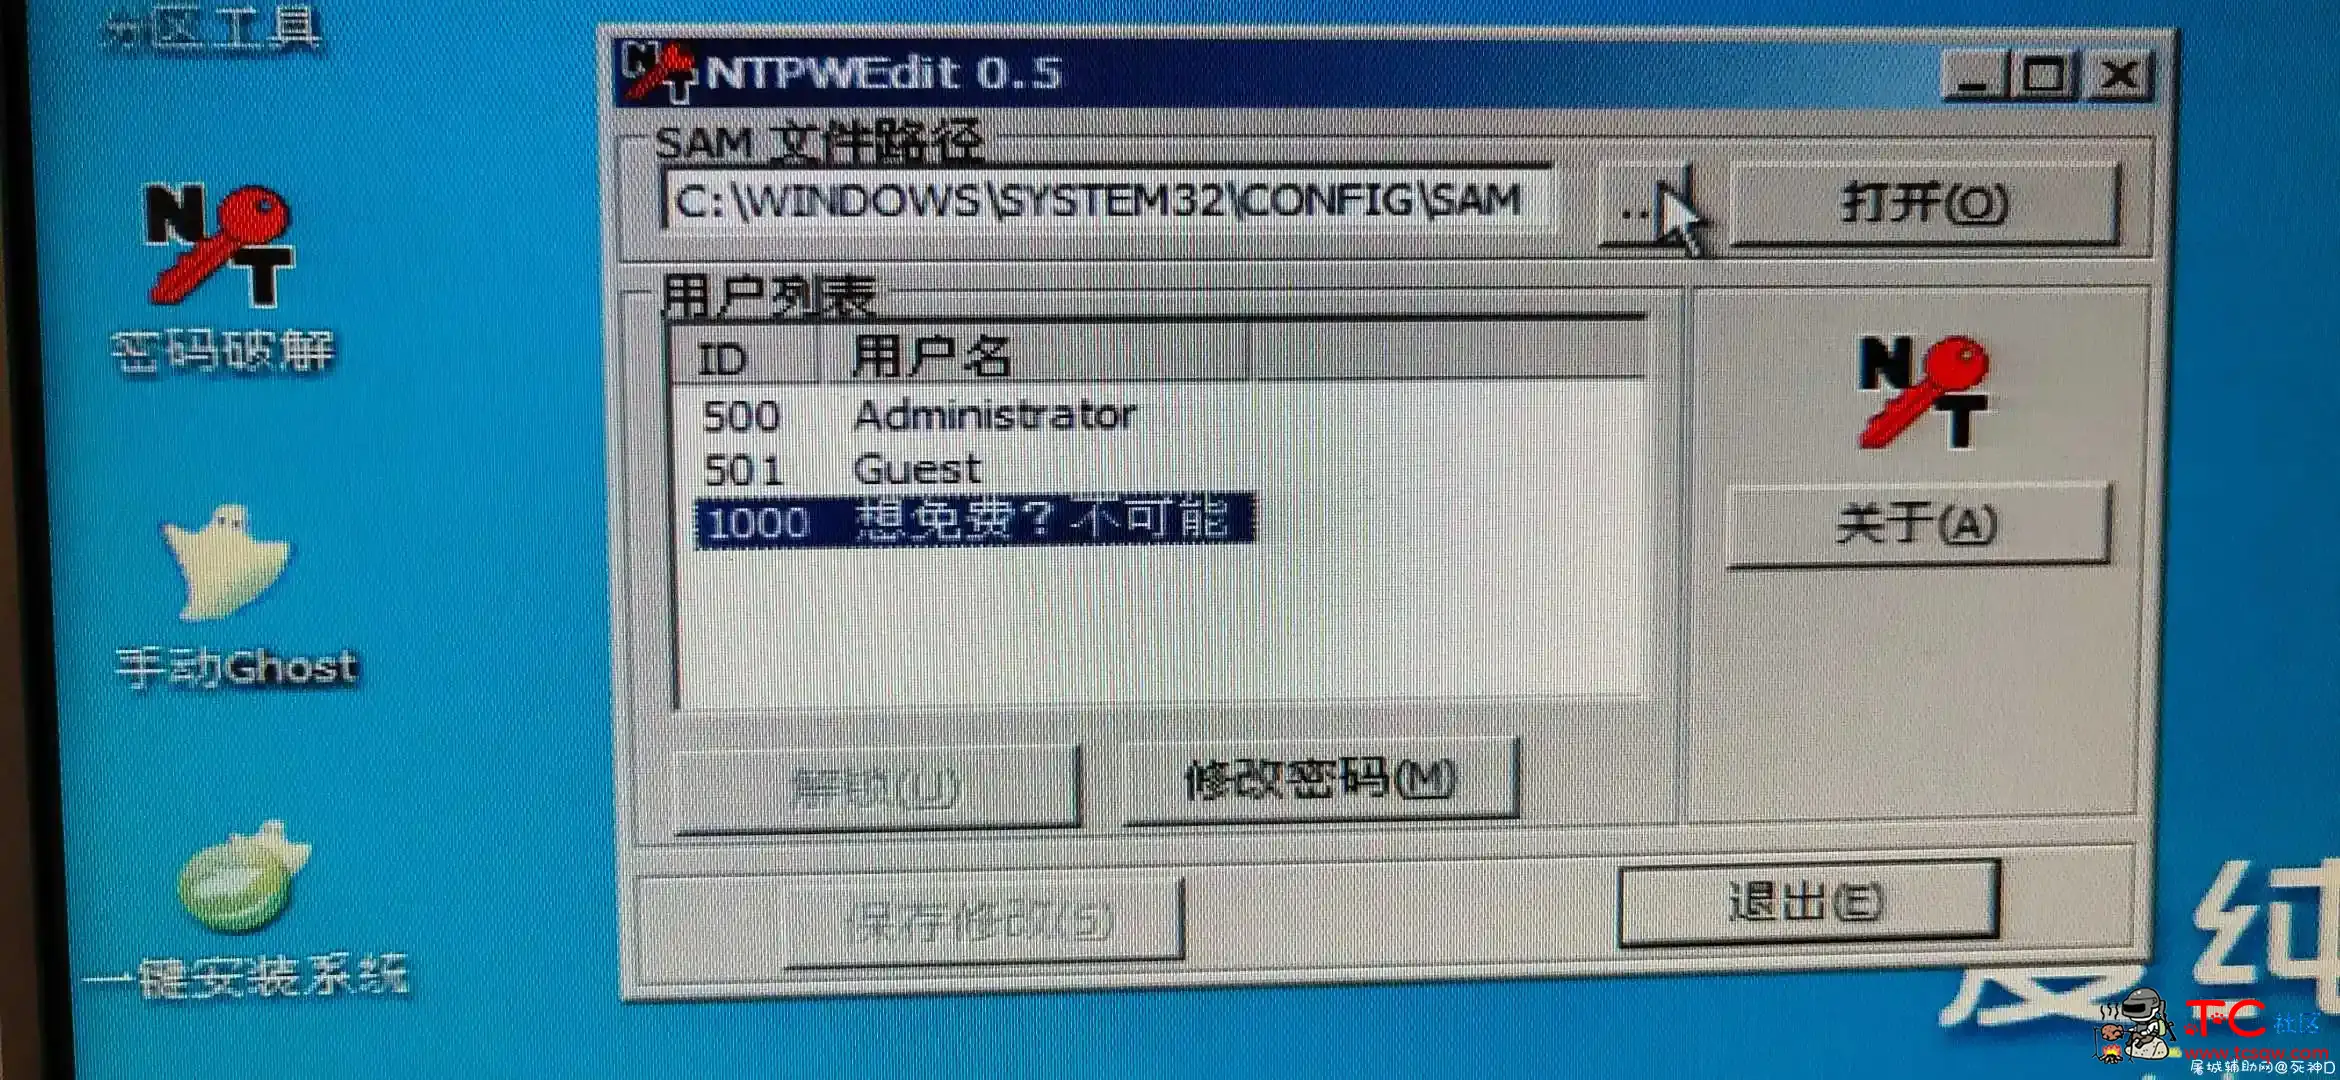 发布锁机软件 屠城辅助网www.tcfz1.com6201